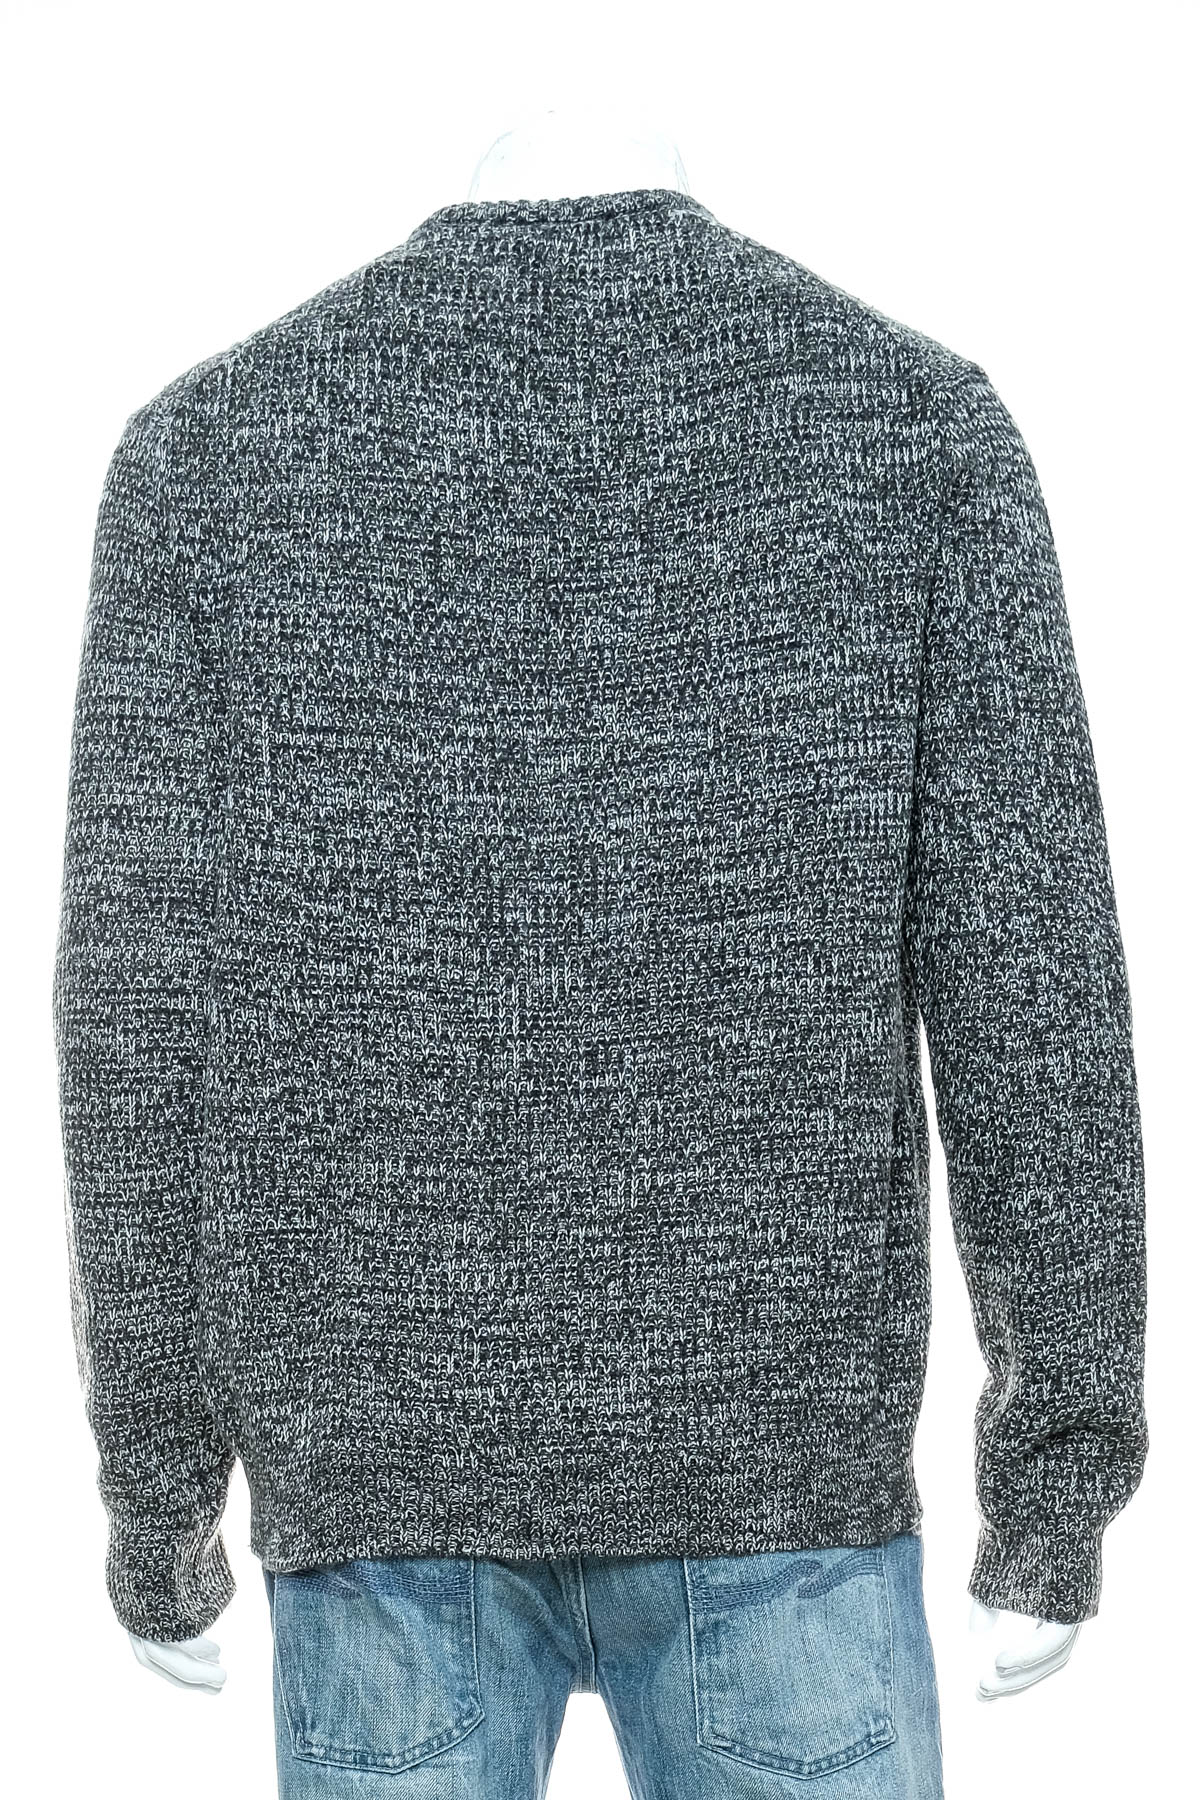 Men's sweater - Infinity Men - 1